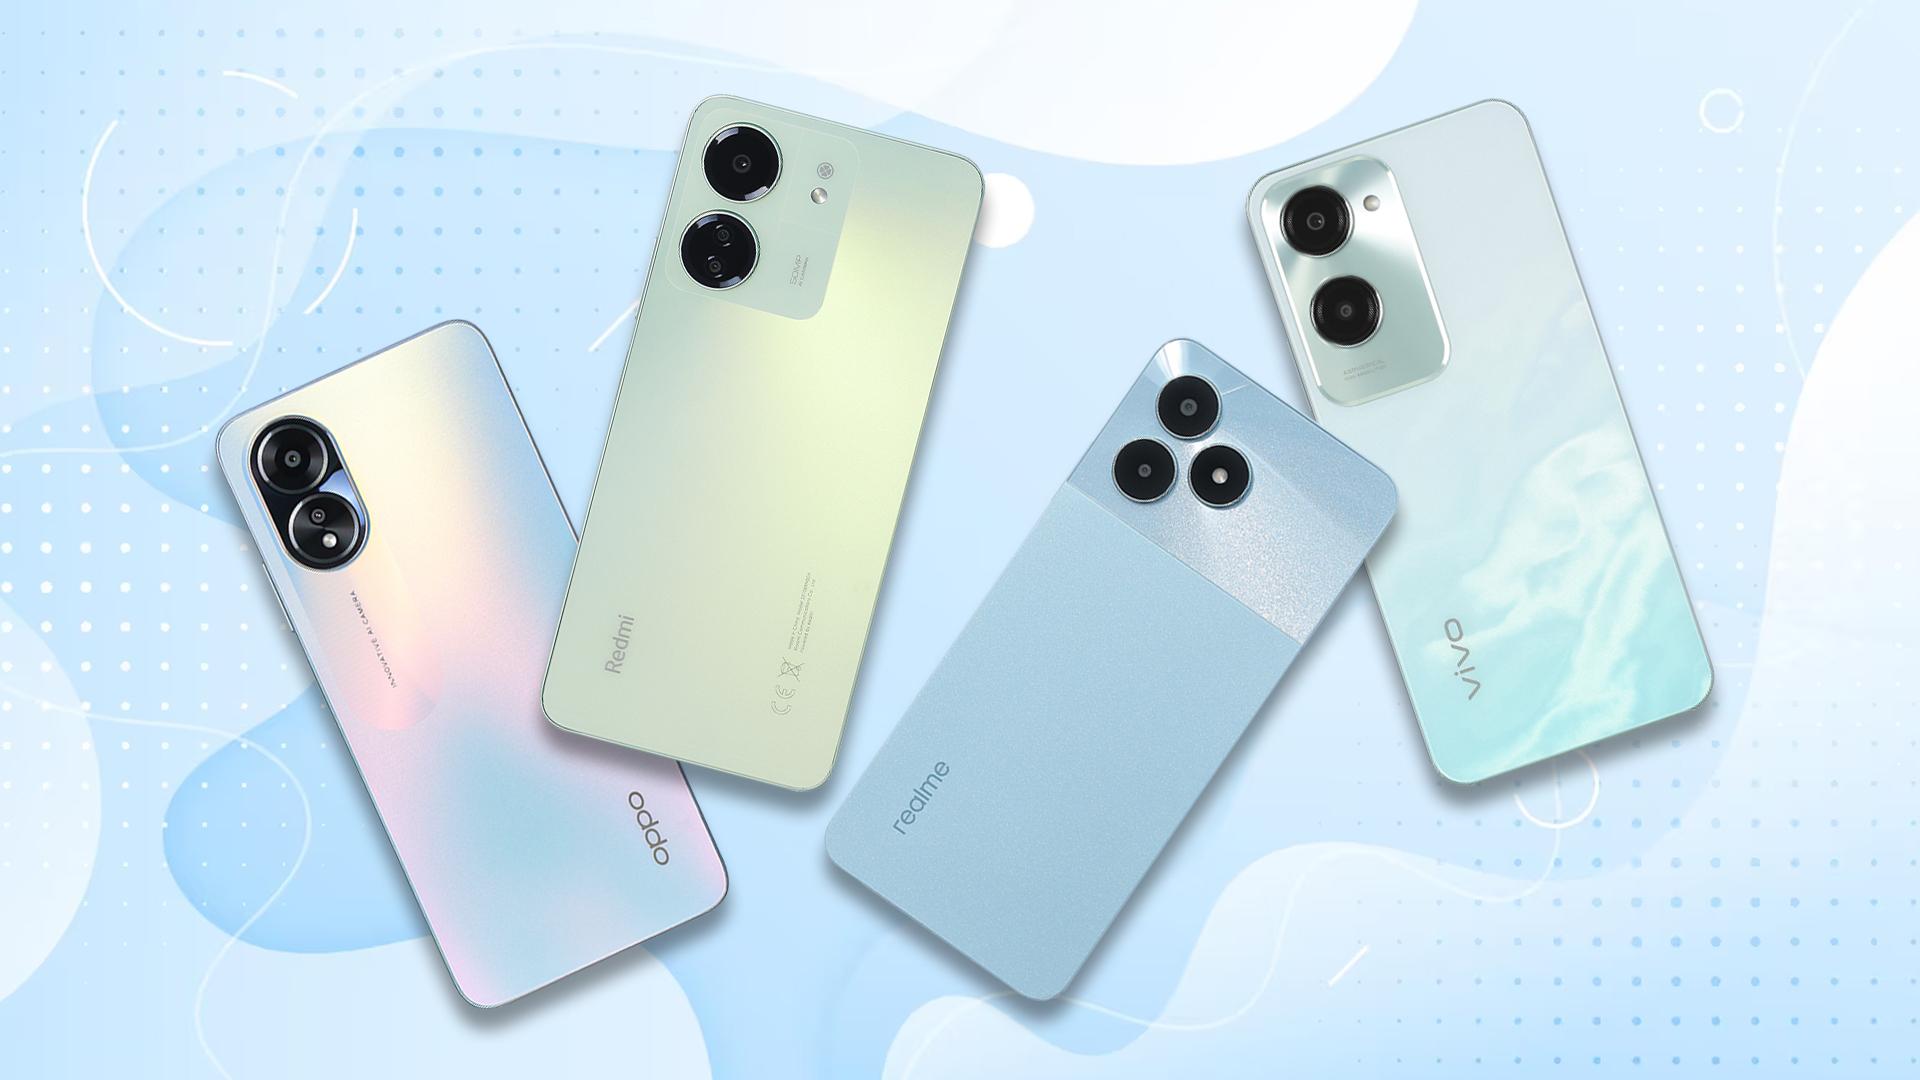 Cả 4 đại diện Oppo, Xiaomi, Realme và Vivo đều có những mẫu smartphone đình đám ở phân khúc trên dưới 3 triệu đồng